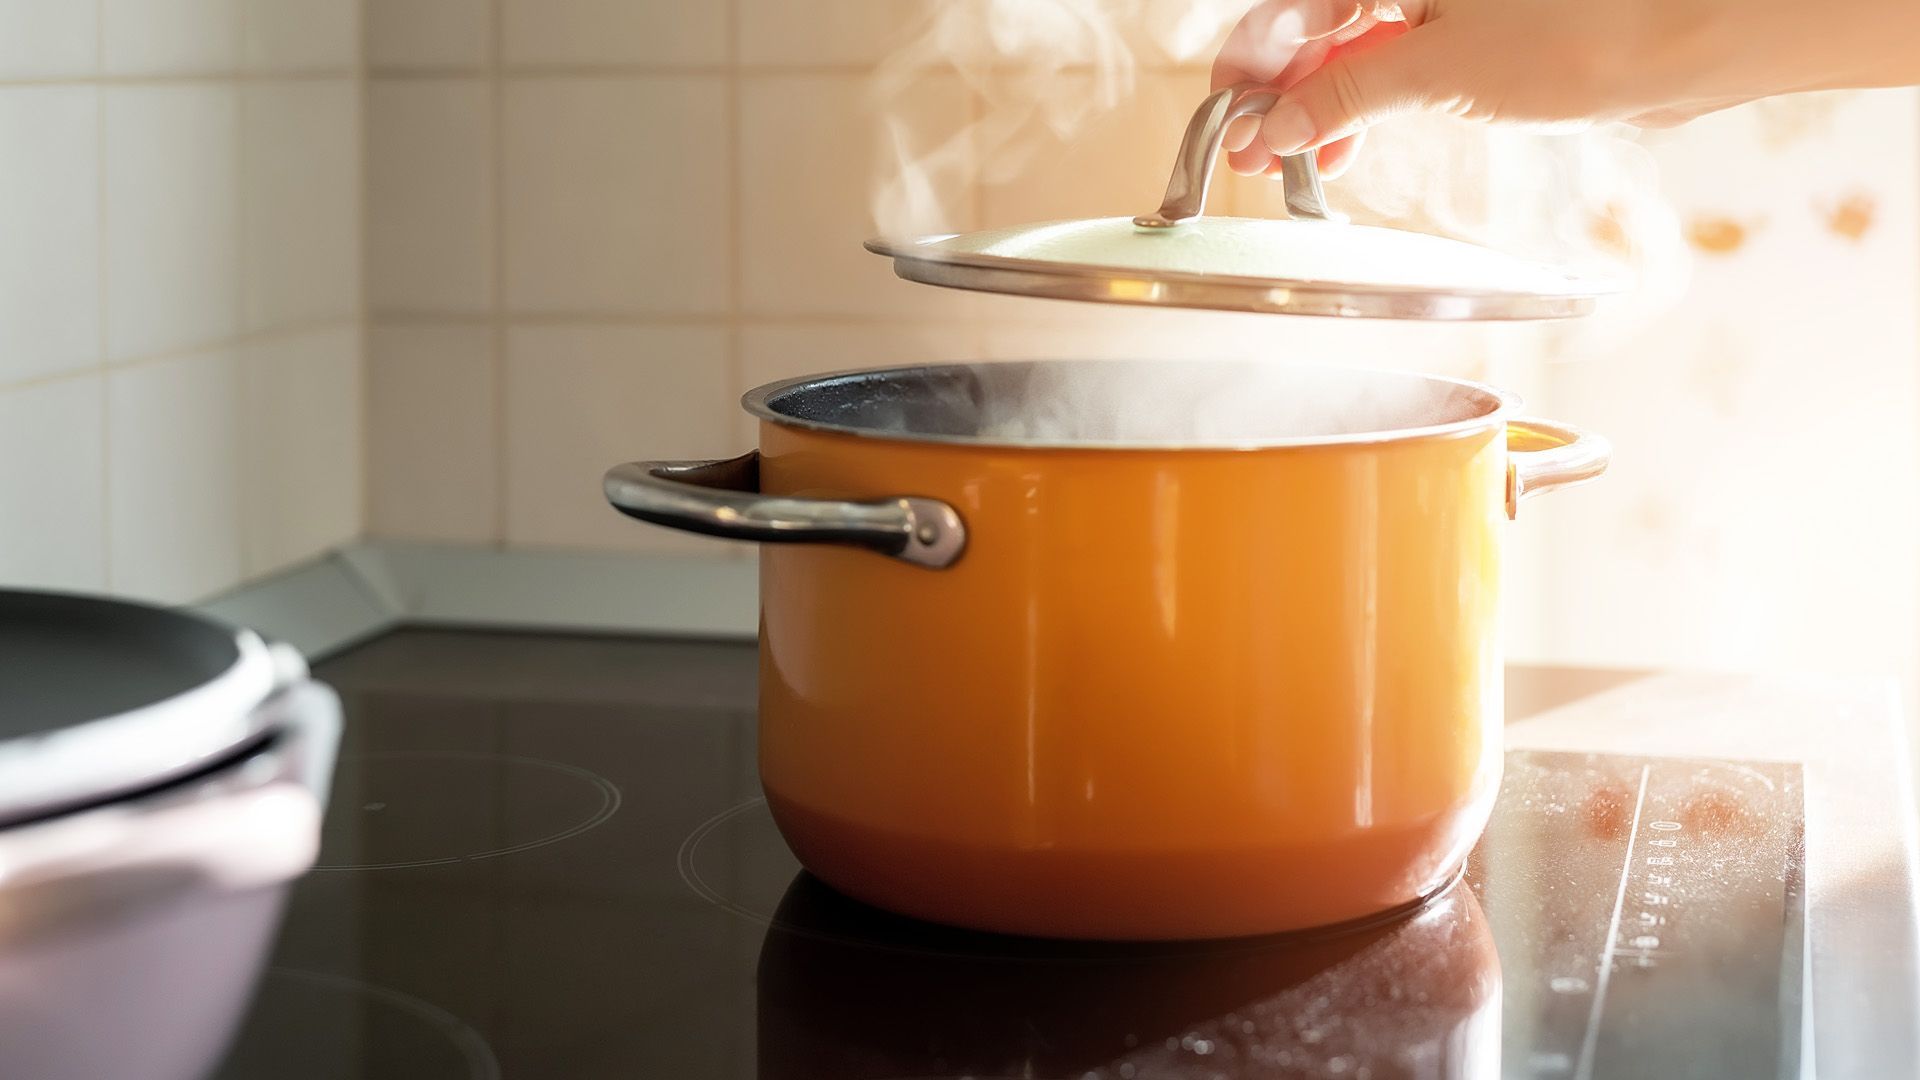 Strom sparen beim Kochen: 5 geniale Tipps, um den Geldbeutel zu schonen